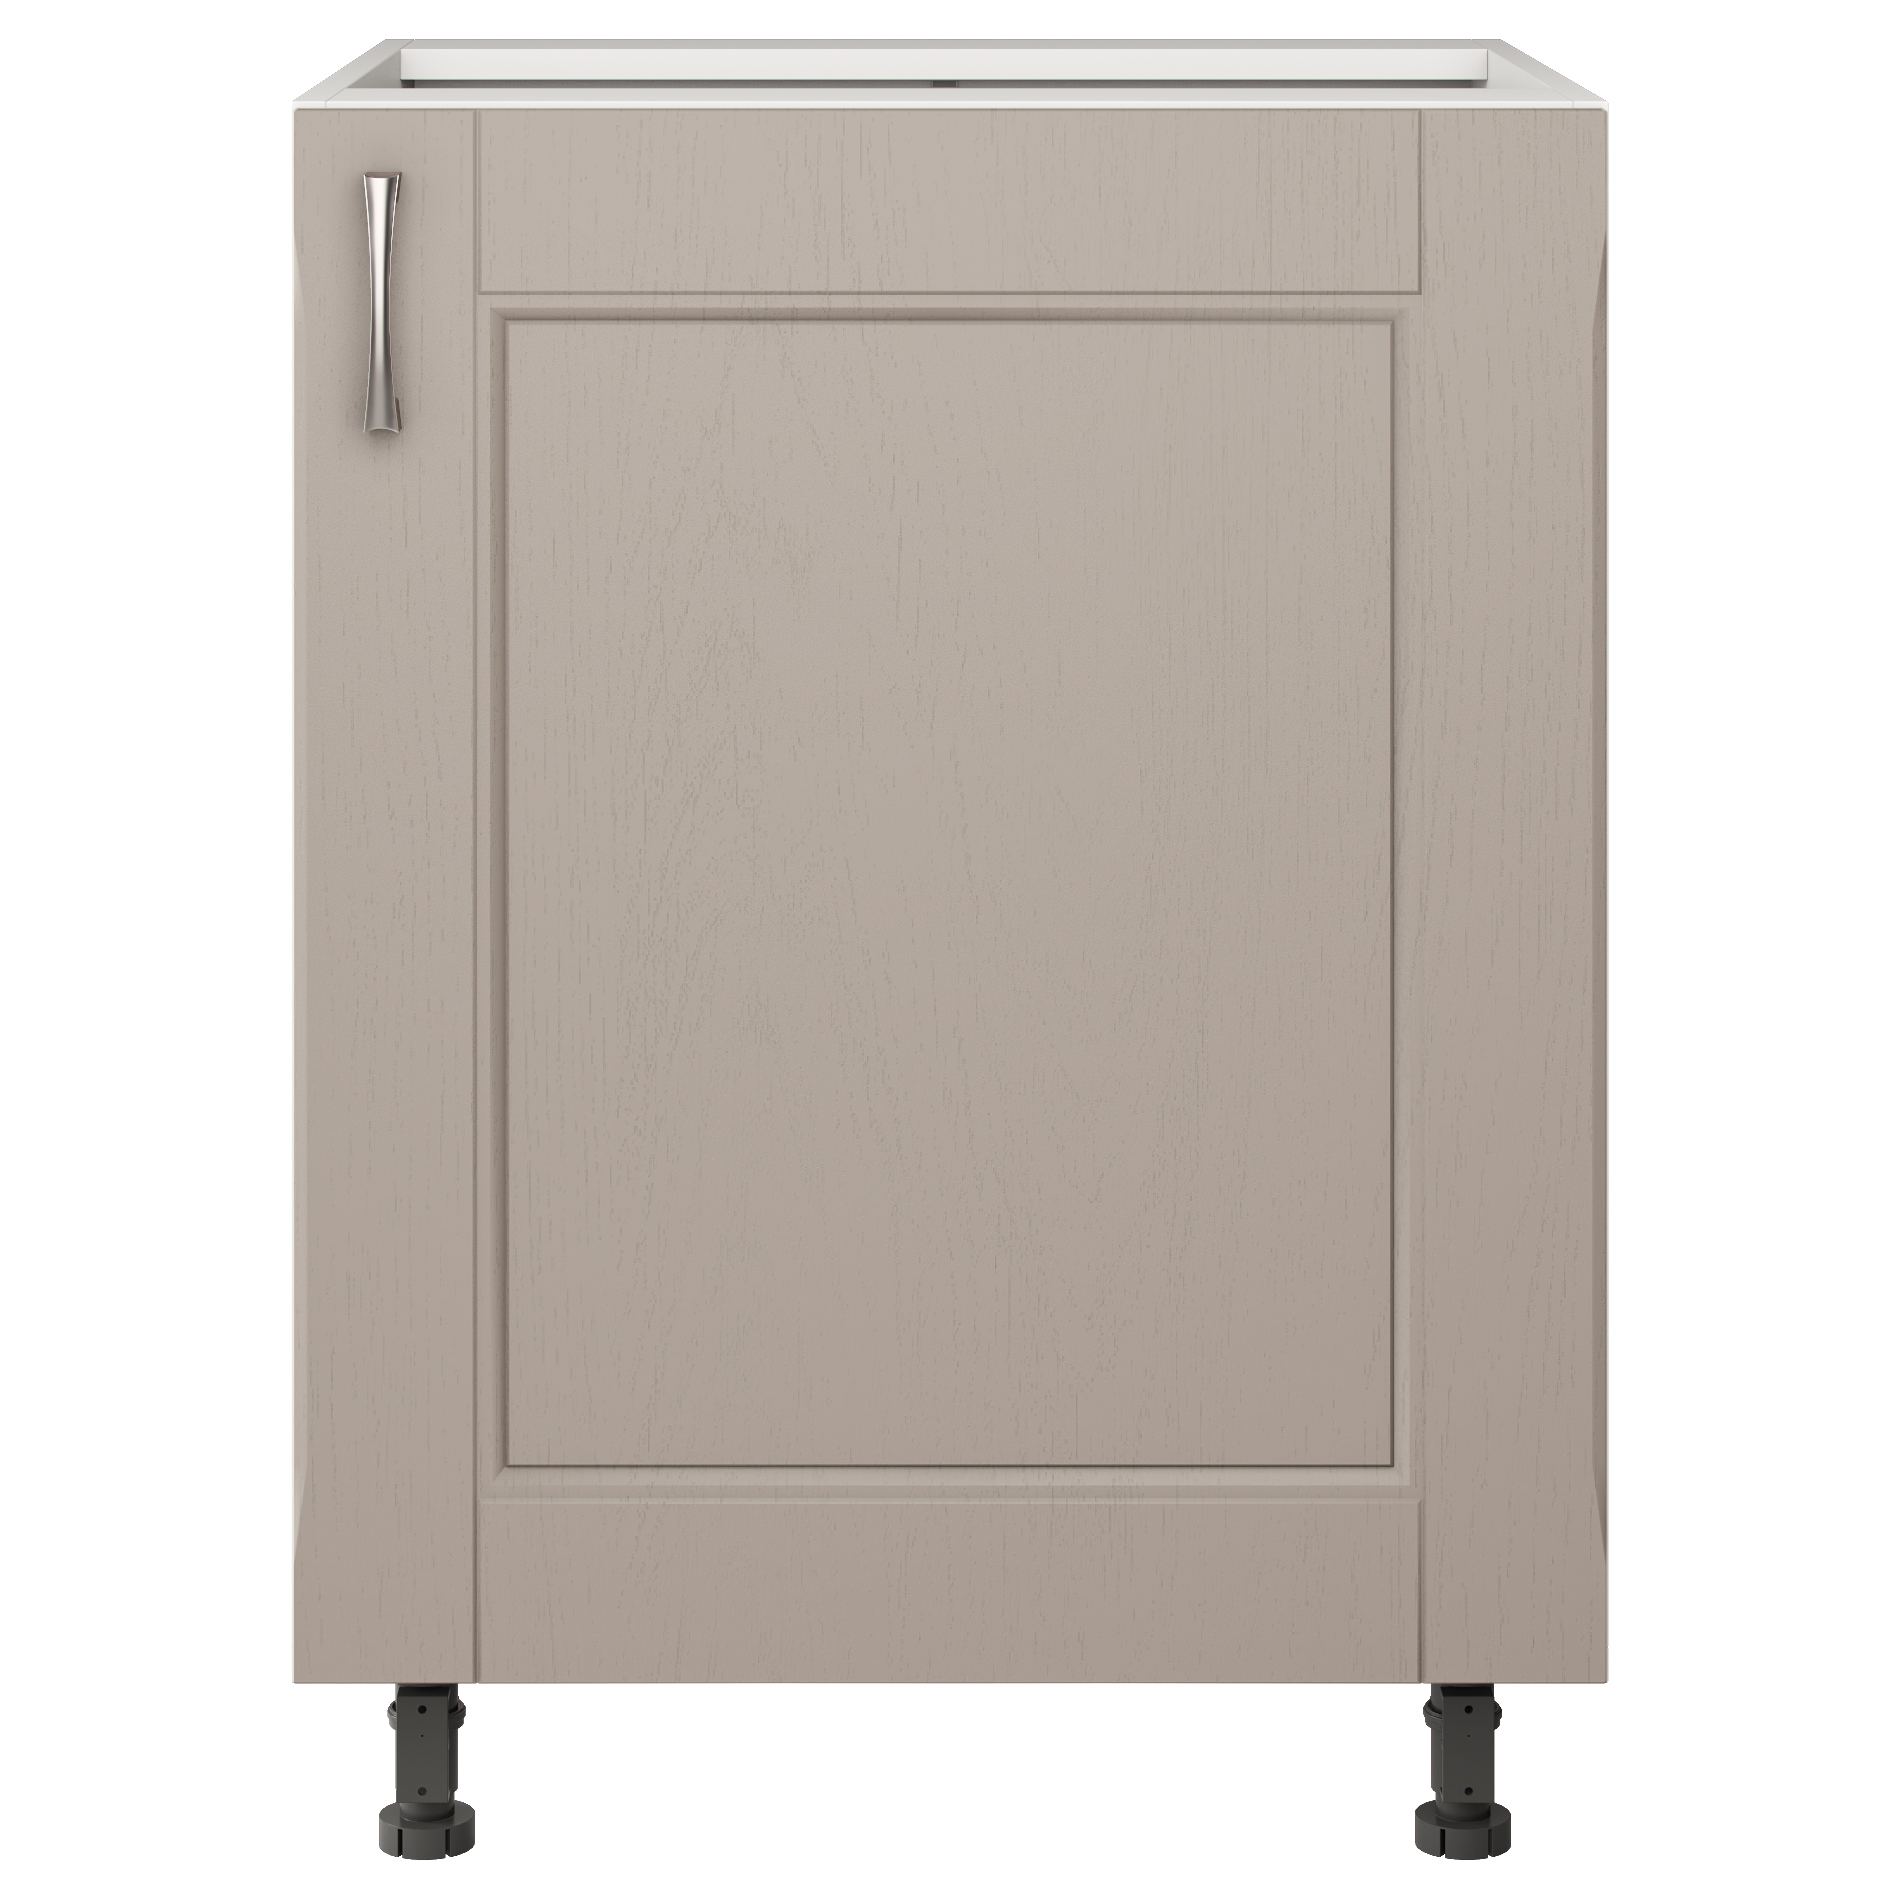 шкаф напольный для кухни 80 см